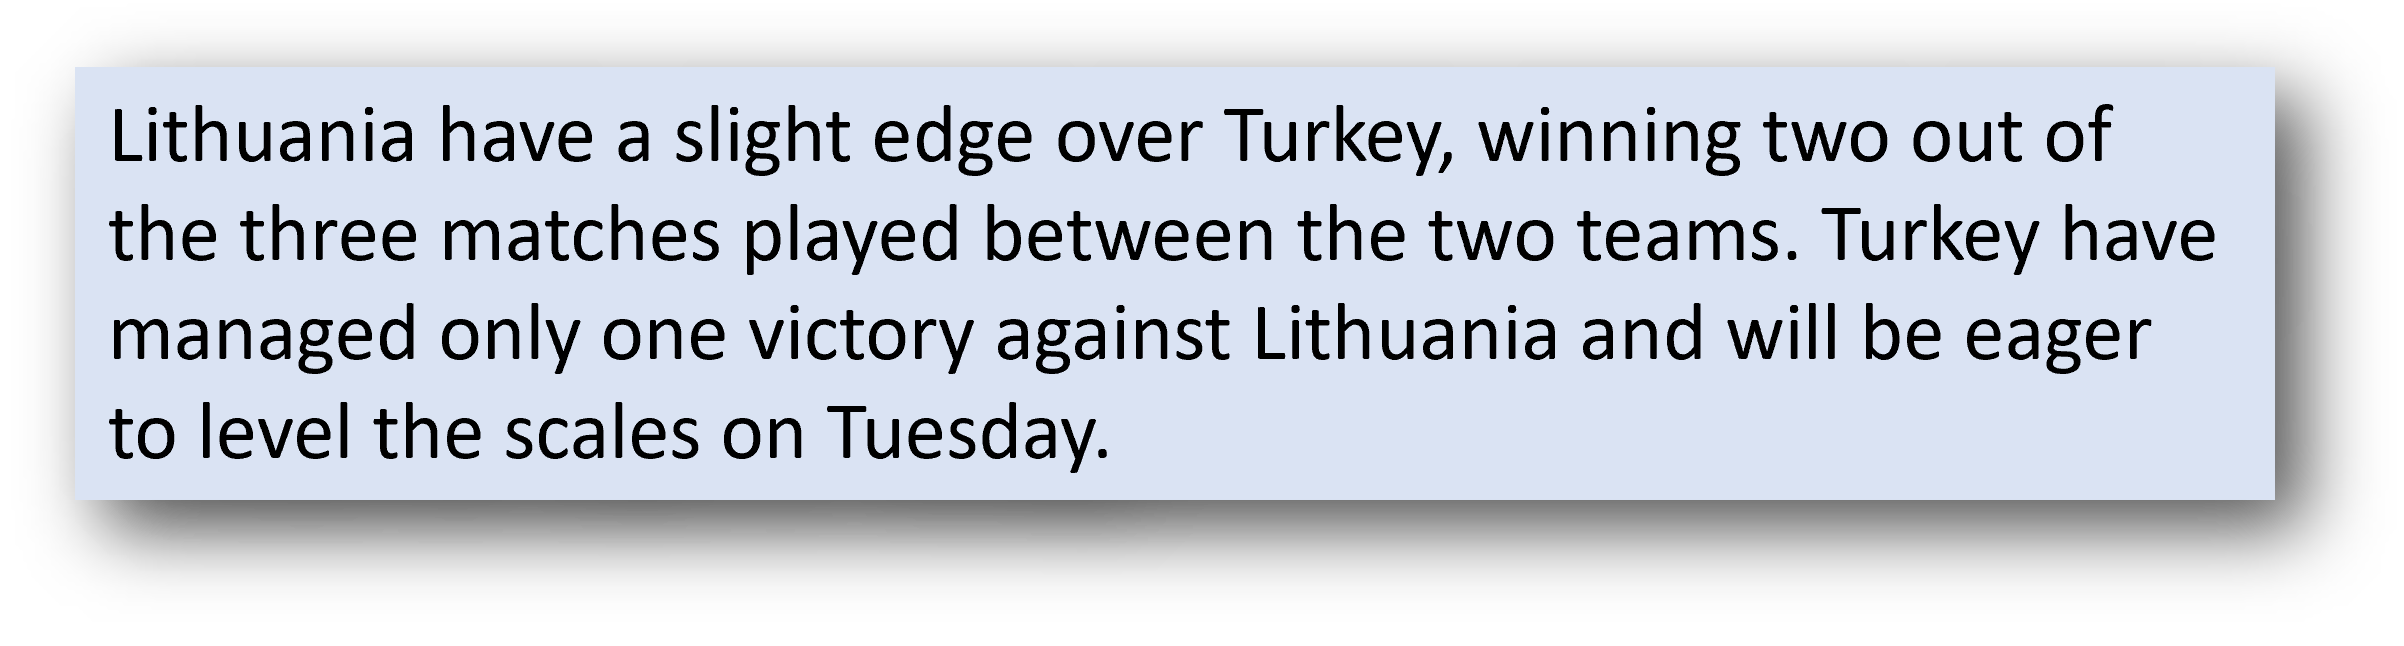 Lithuania vs Turkey head to head